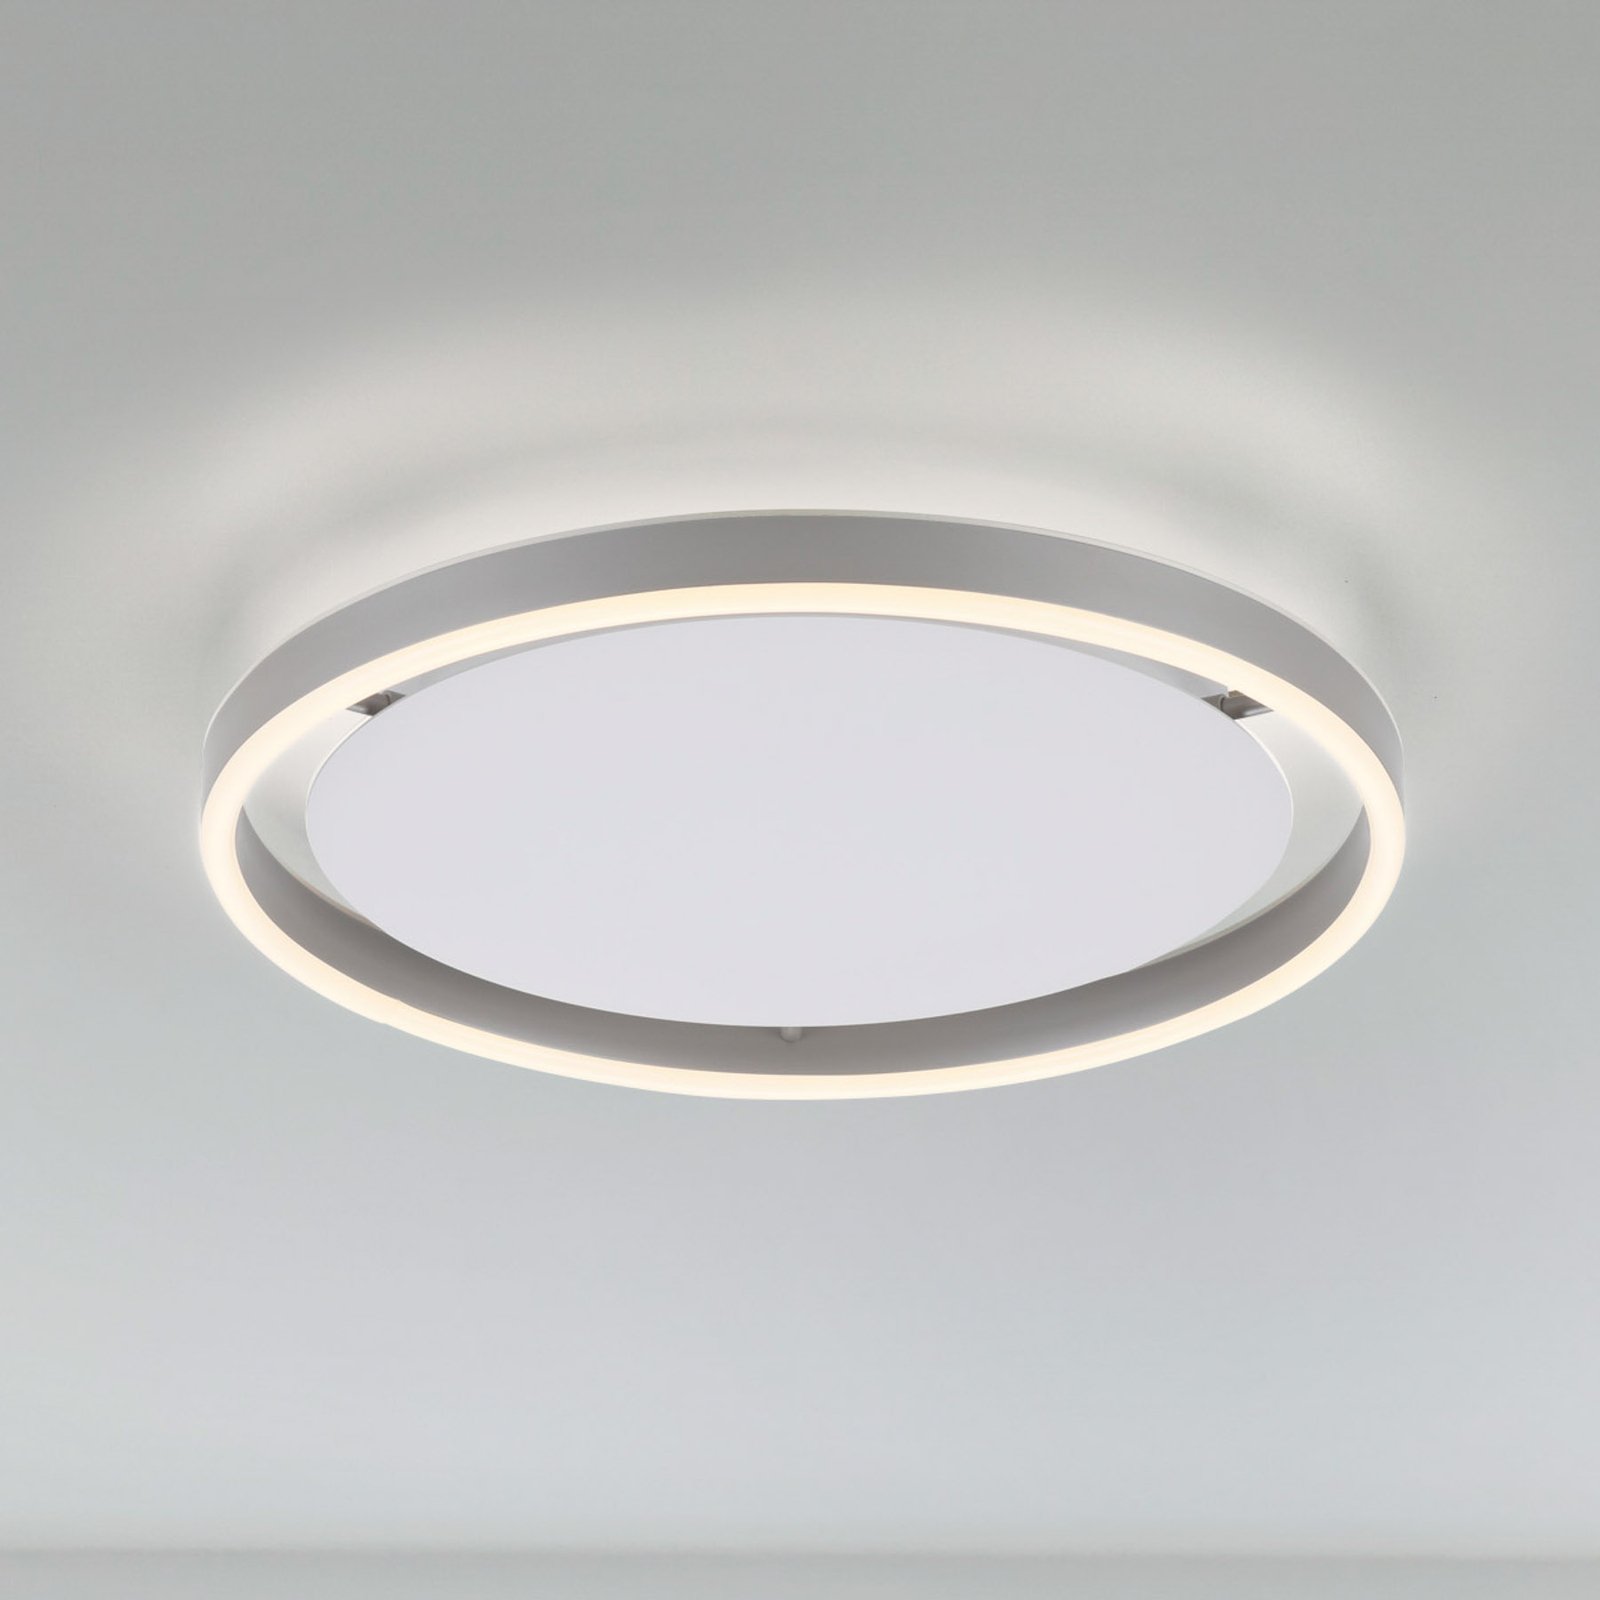 LED ceiling light Ritus, Ø 39.3cm, aluminium